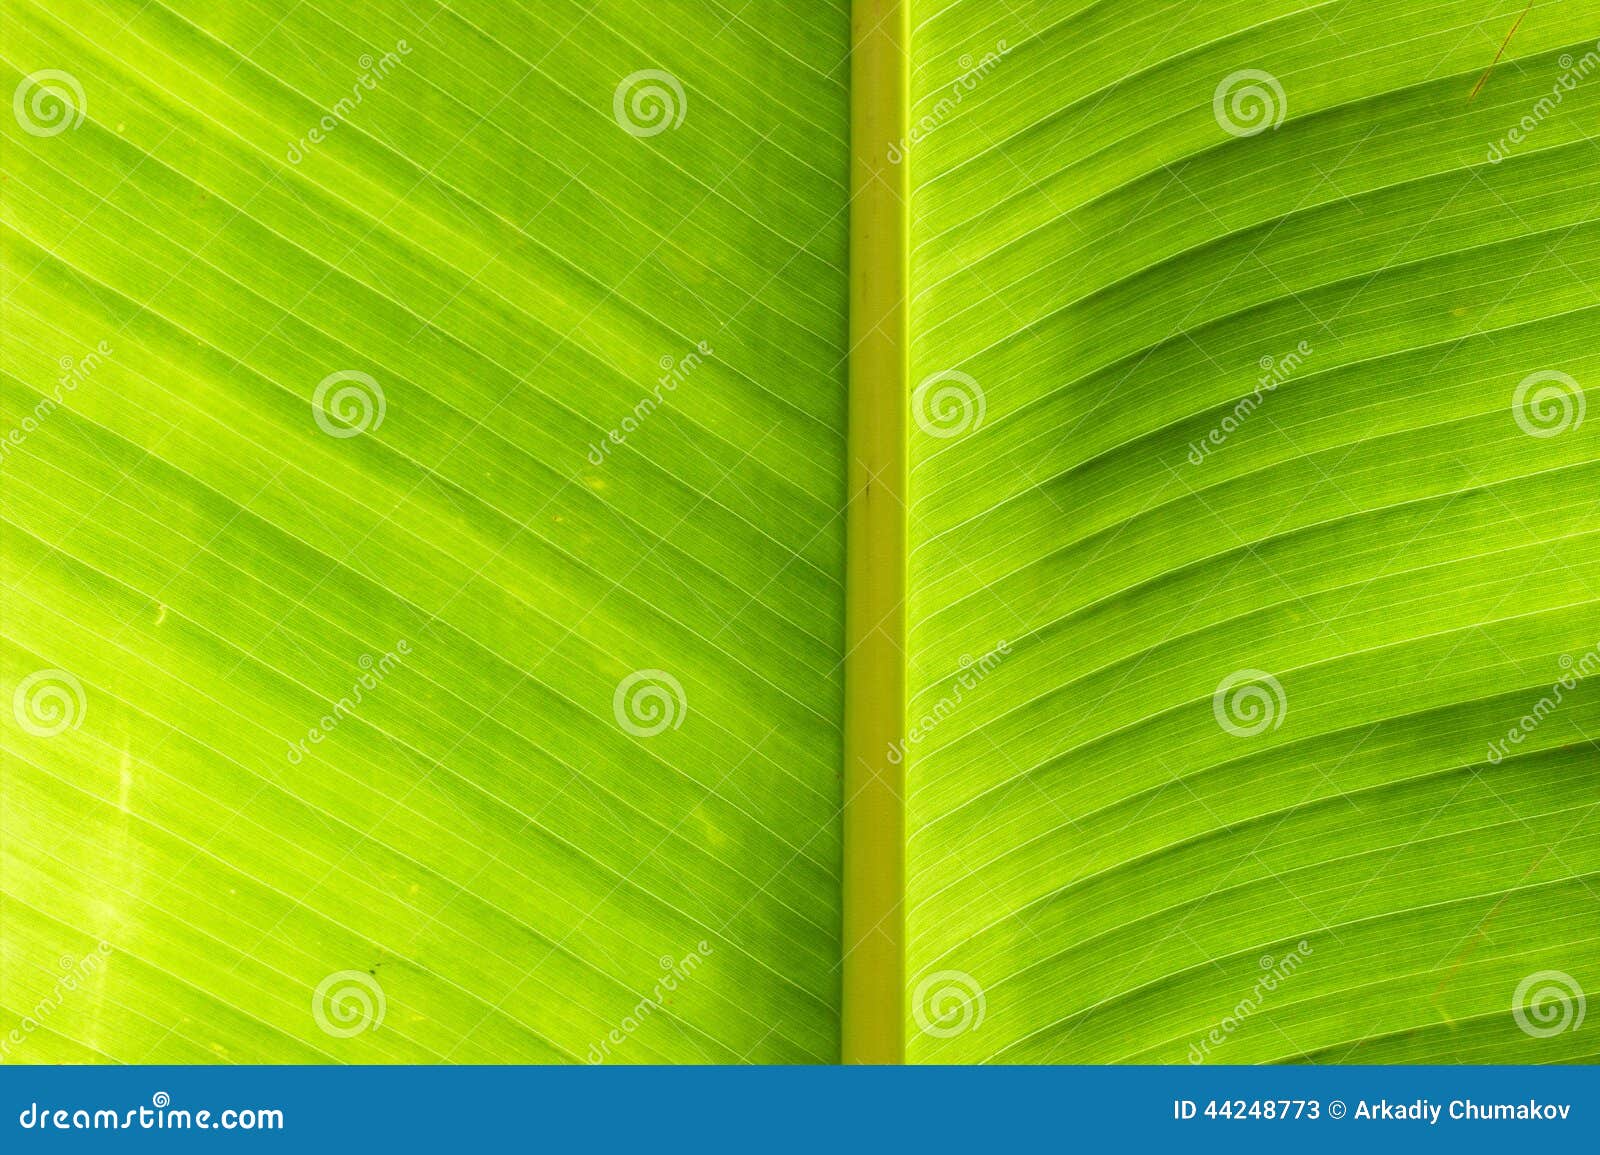 香蕉叶子 库存照片. 图片 包括有 关闭, 叶子, 生活, 照亮, 模式, 玻色子, 下落, 颜色, 绿色 - 95016170